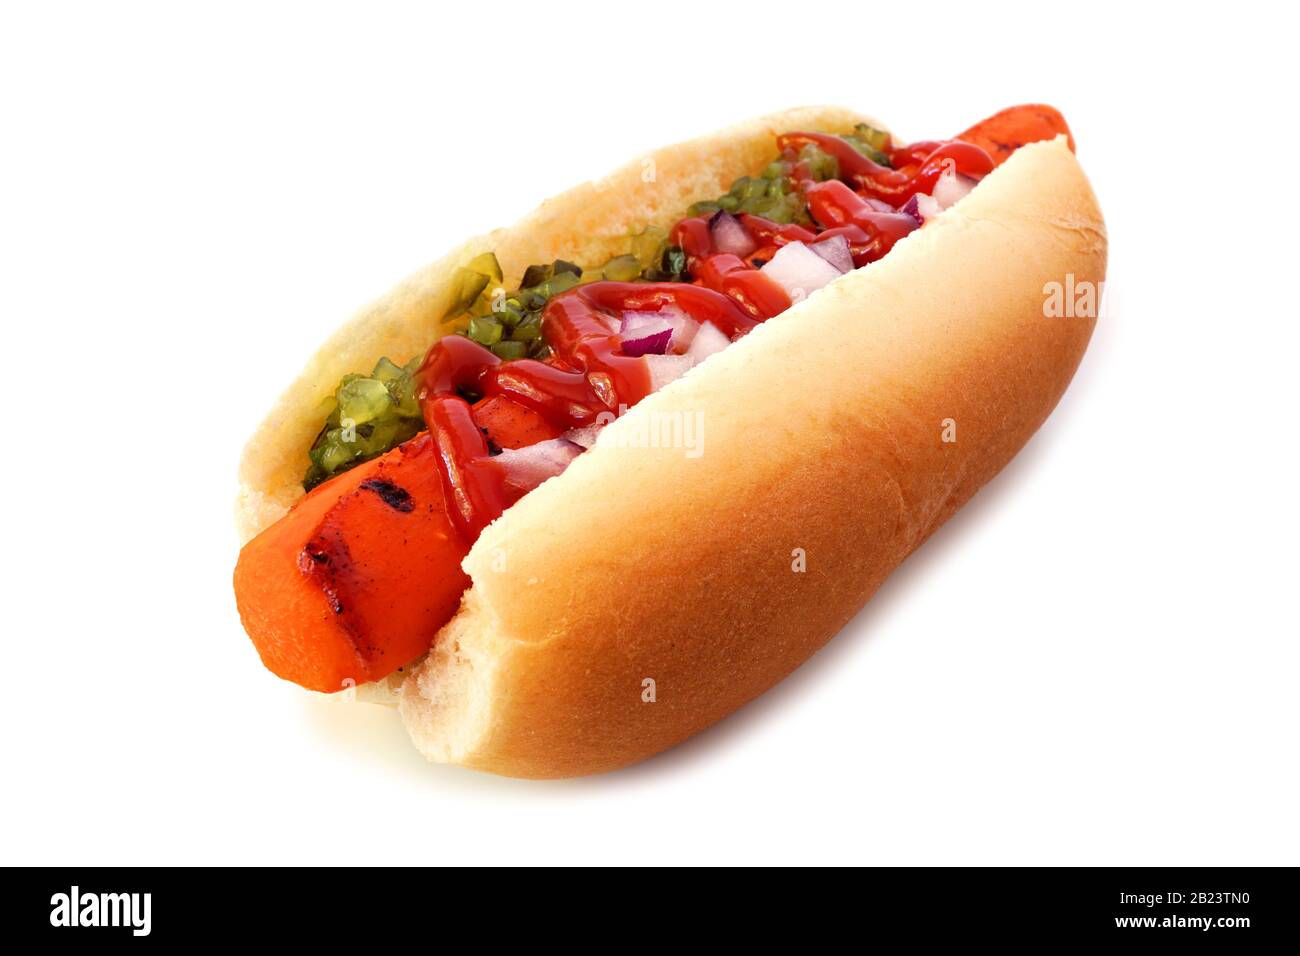 Karotten veganer heißer Hund mit Zischen, Ketchup und Zwiebeln isoliert auf weißem Hintergrund. Gesundes, pflanzengestütztes, fleischloses Essenskonzept. Stockfoto